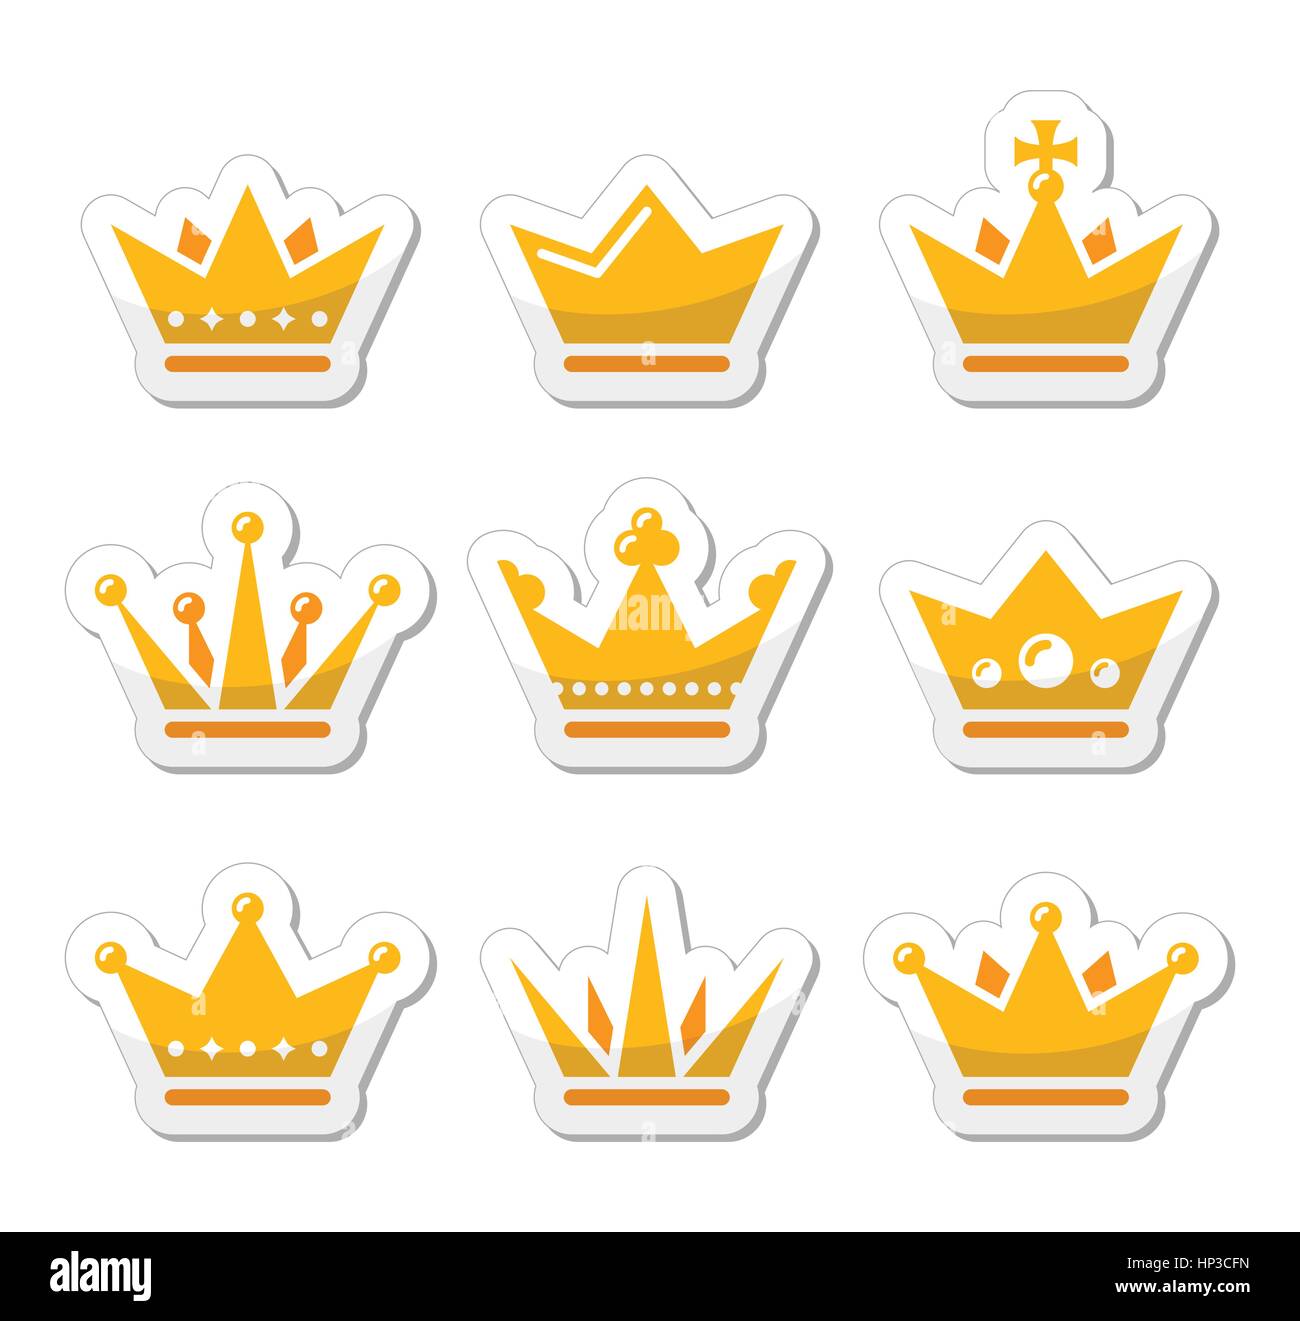 Krone, stellen Königsfamilie gold Icons. König, Königin Krone Vektor-Icons Set isoliert auf weiss Stock Vektor